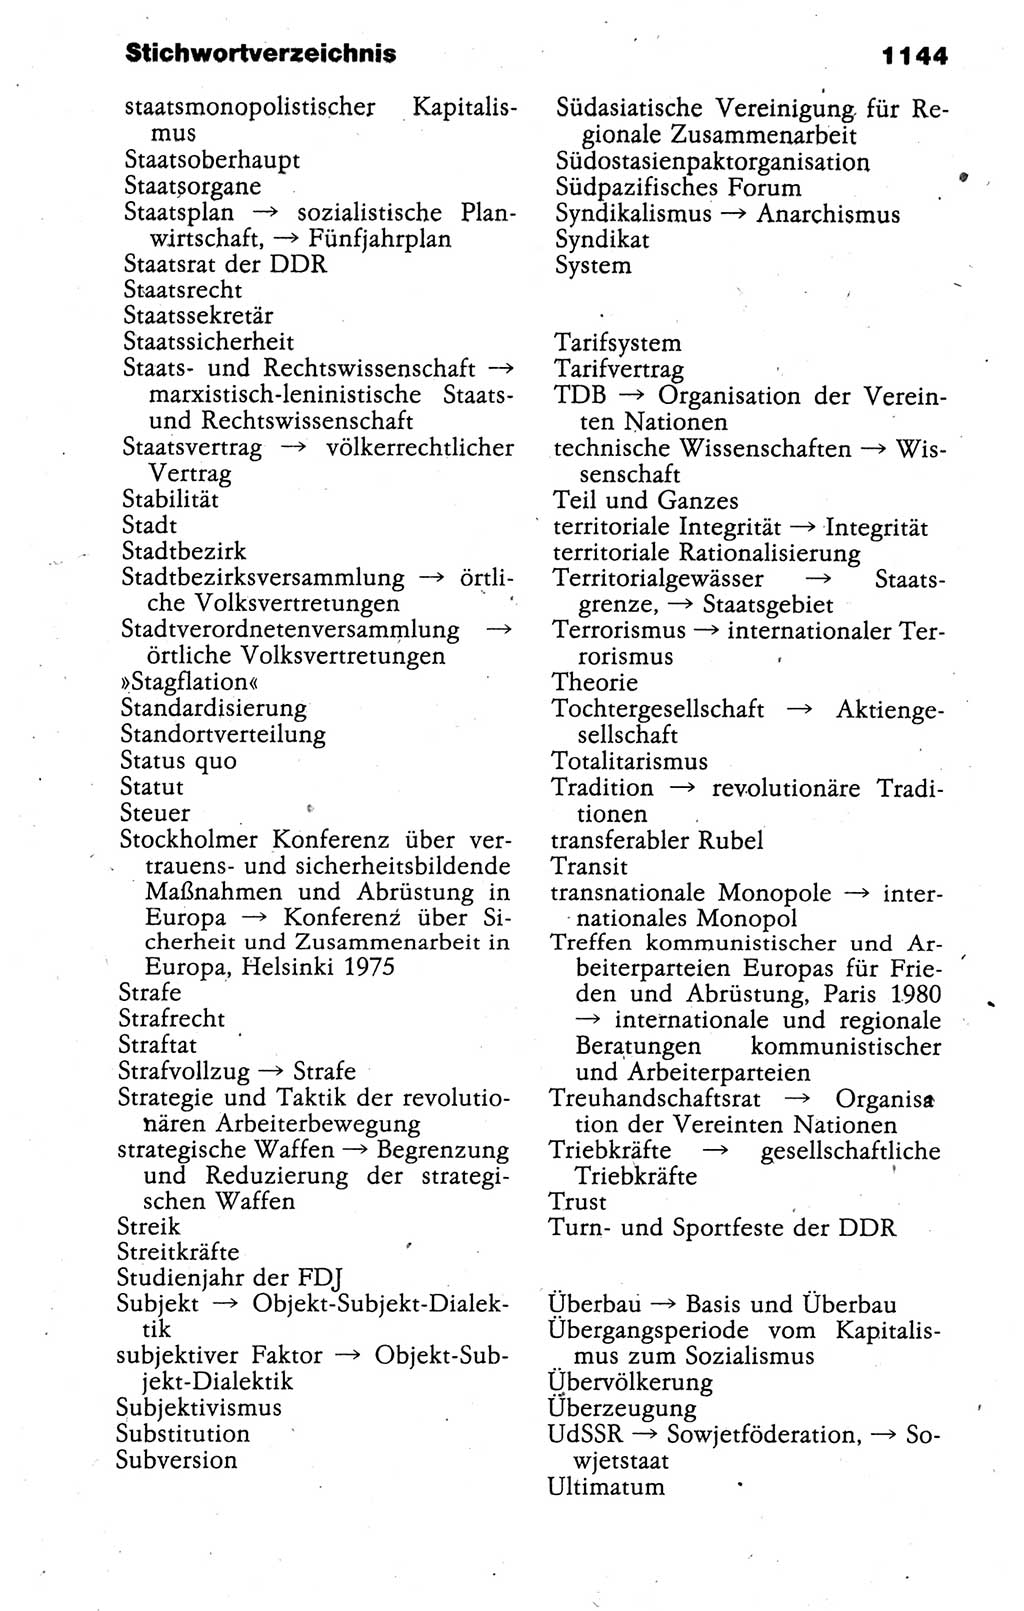 Kleines politisches Wörterbuch [Deutsche Demokratische Republik (DDR)] 1988, Seite 1144 (Kl. pol. Wb. DDR 1988, S. 1144)